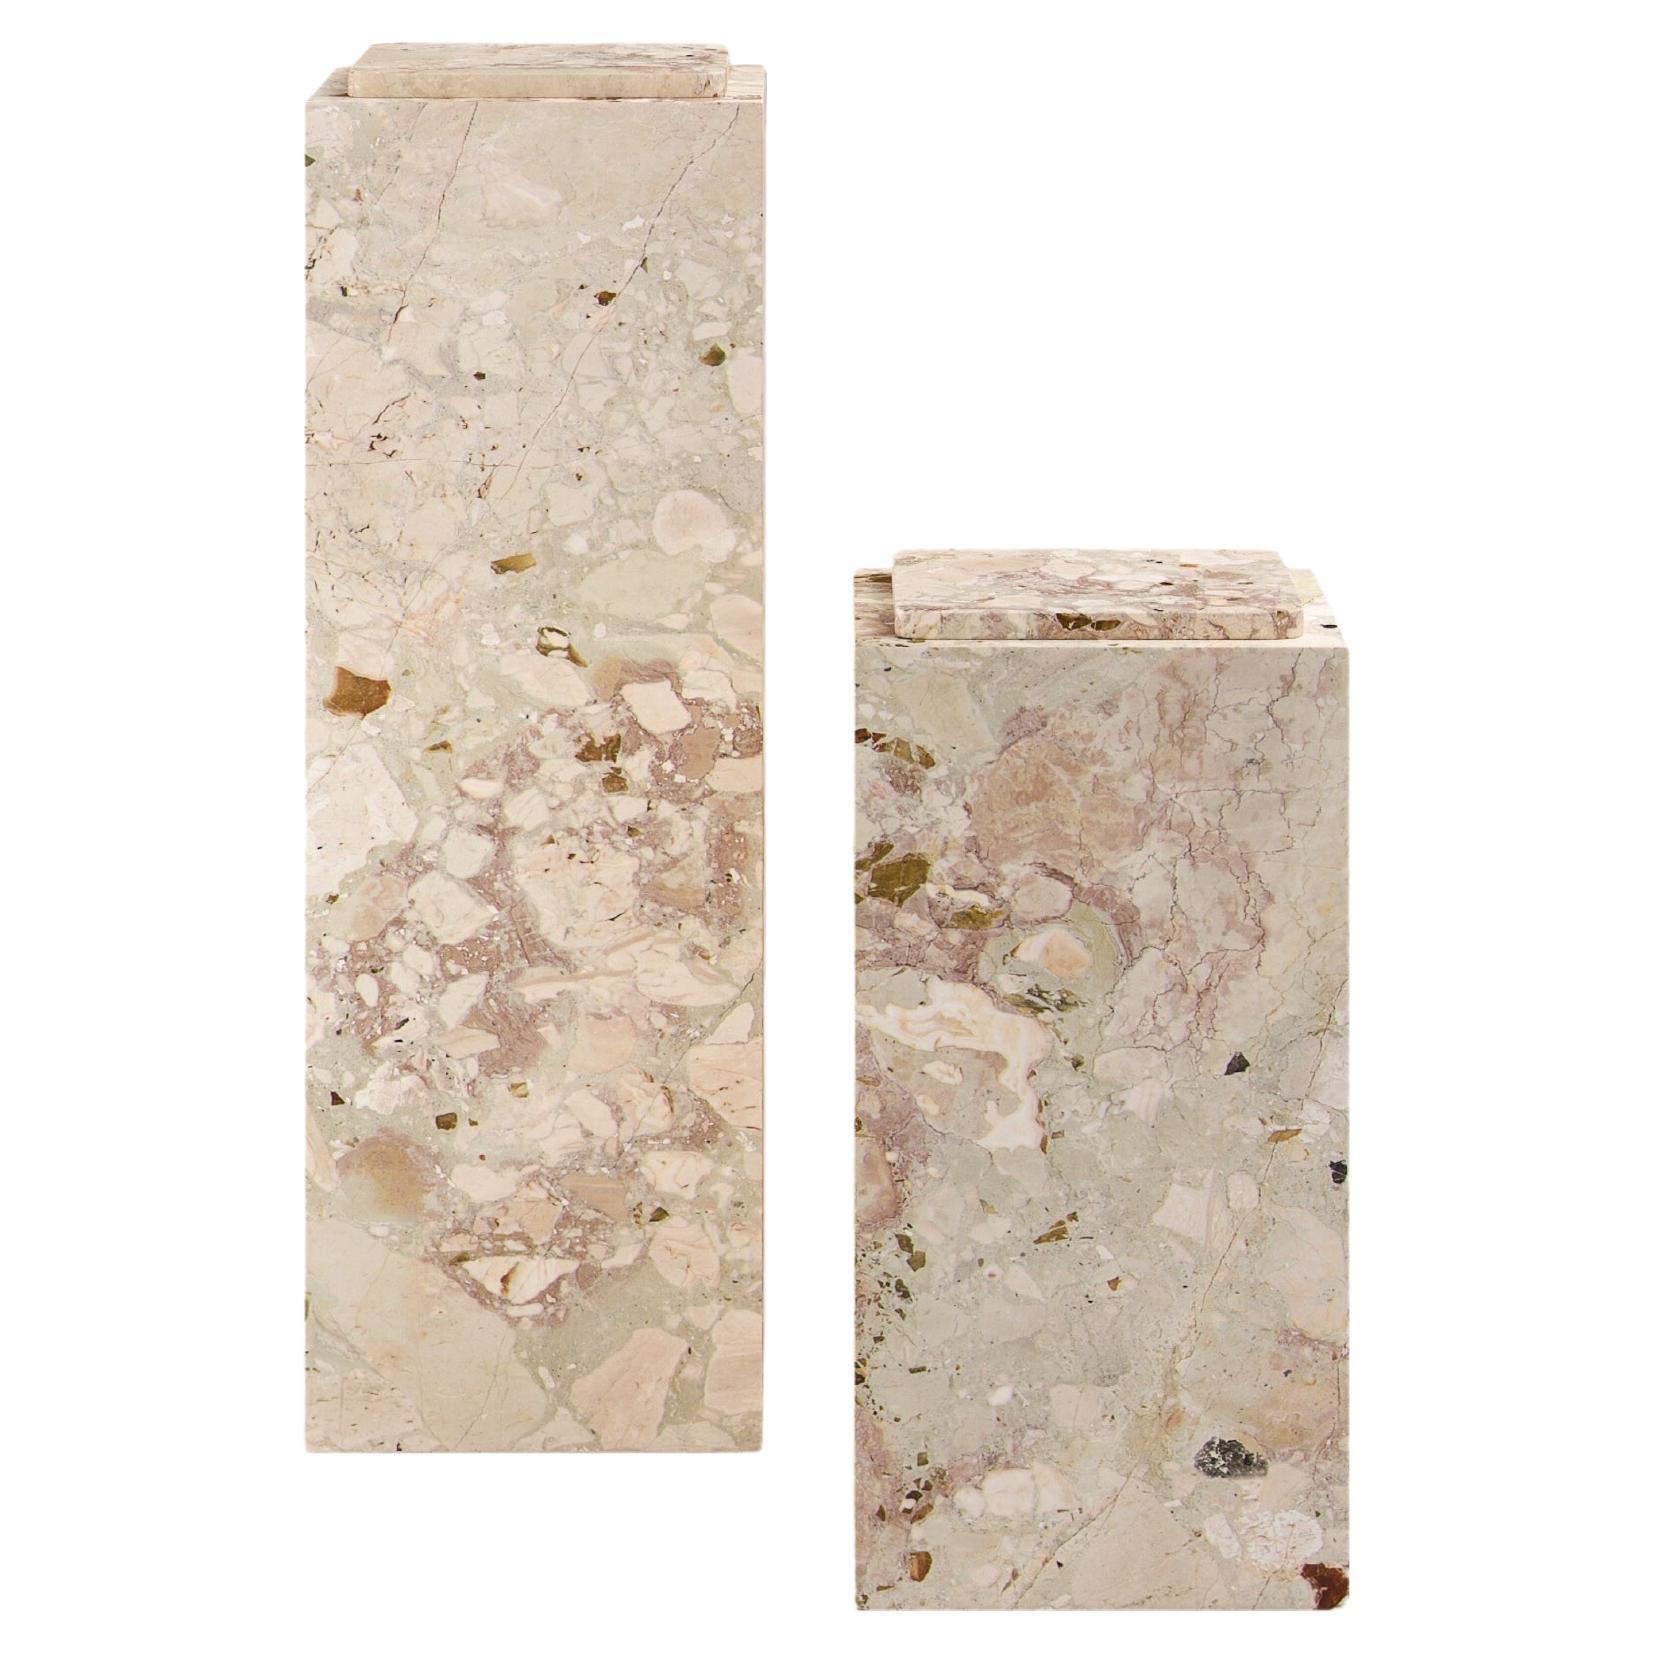 FORM(LA) Cubo Pedestal 12”L x 12"W x 24”H Breccia Rosa Marble